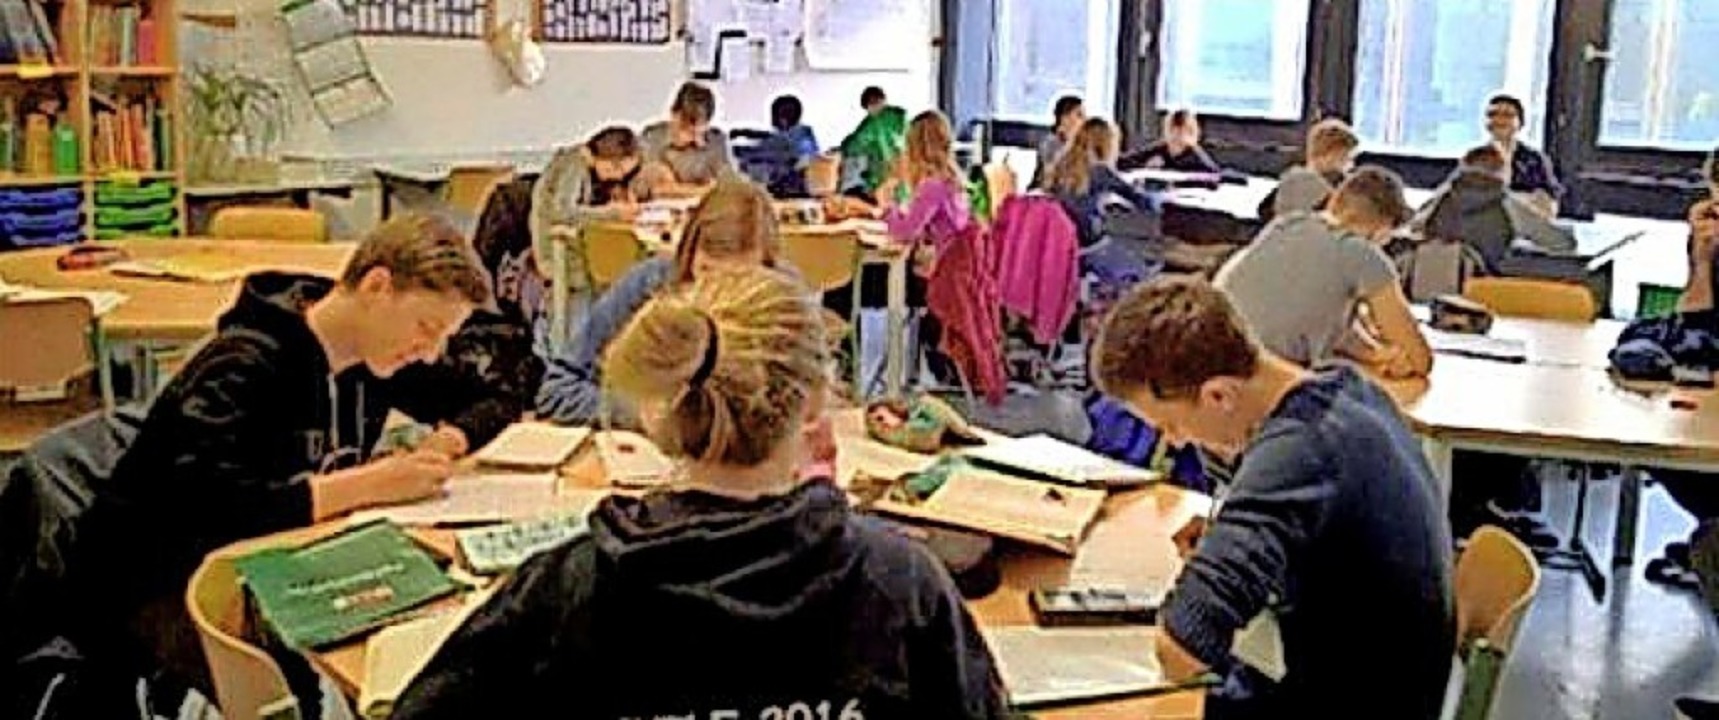 Die Hausaufgabenbetreuung vor der Pandemie  | Foto: Goethe-Gymnasium Emmendingen